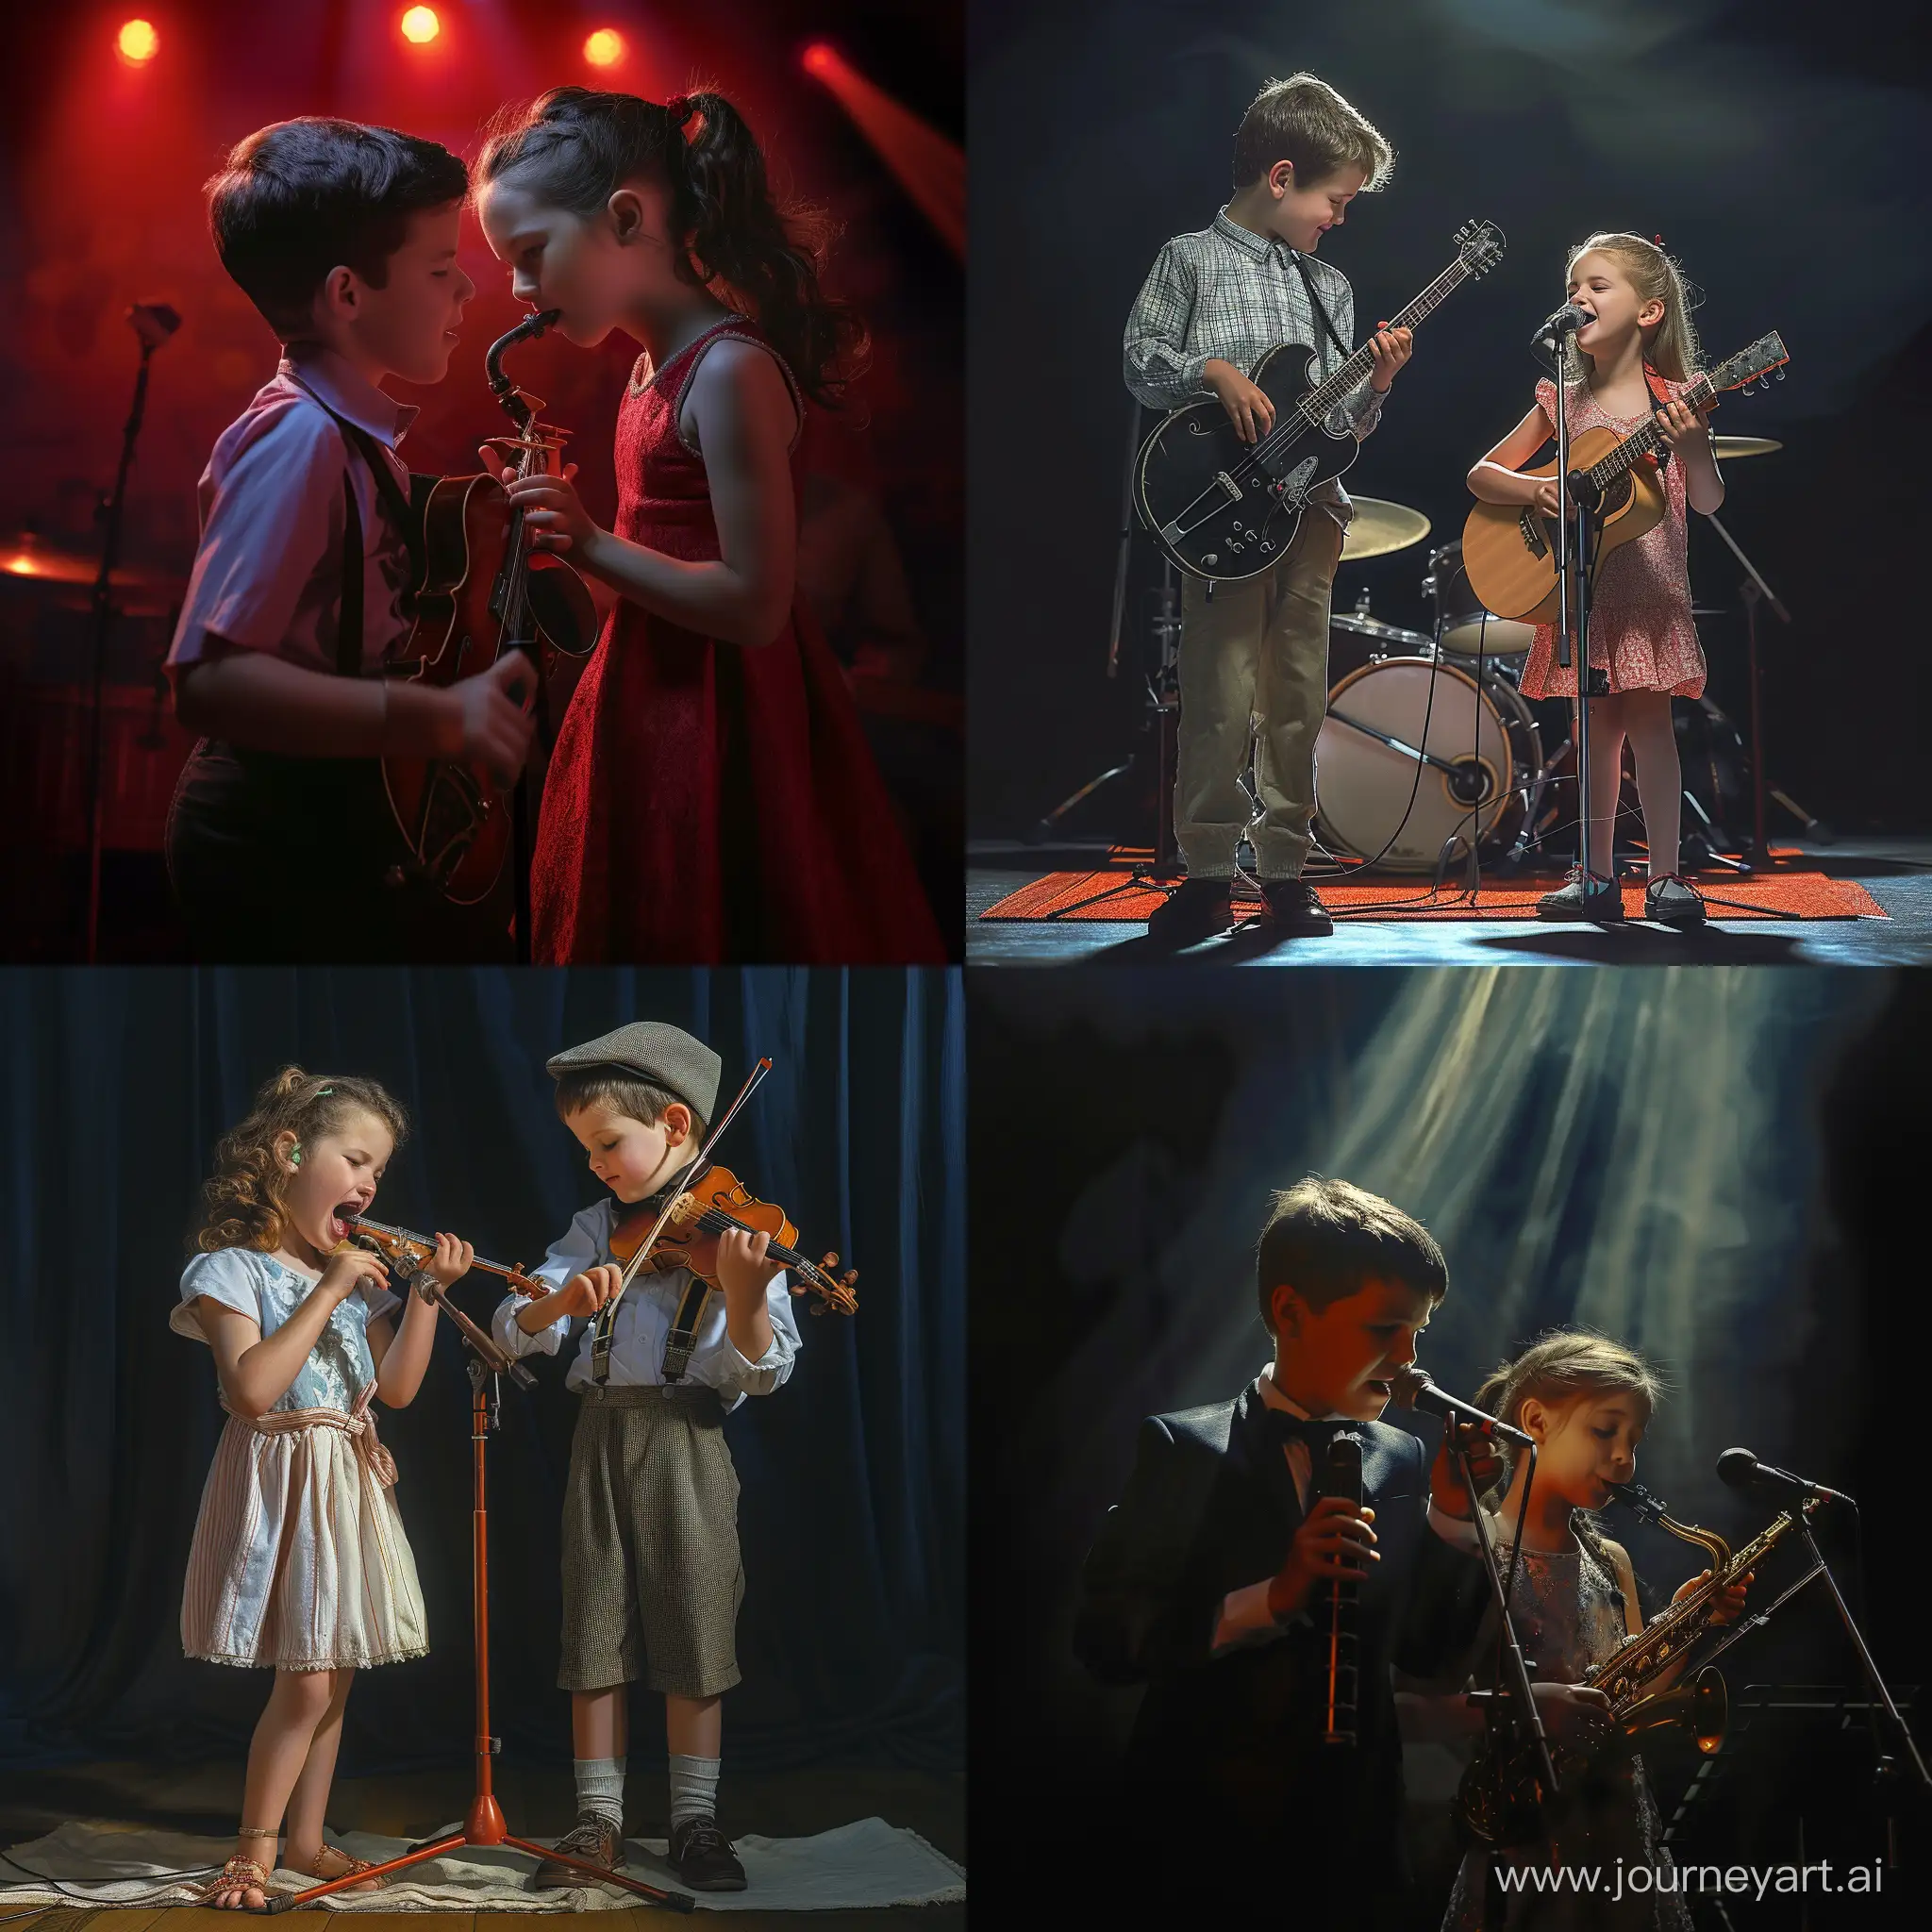 Мальчик и девочка поют на сцене и играют на музыкальных инструментах, фотография, гиперреализм, высокое разрешение